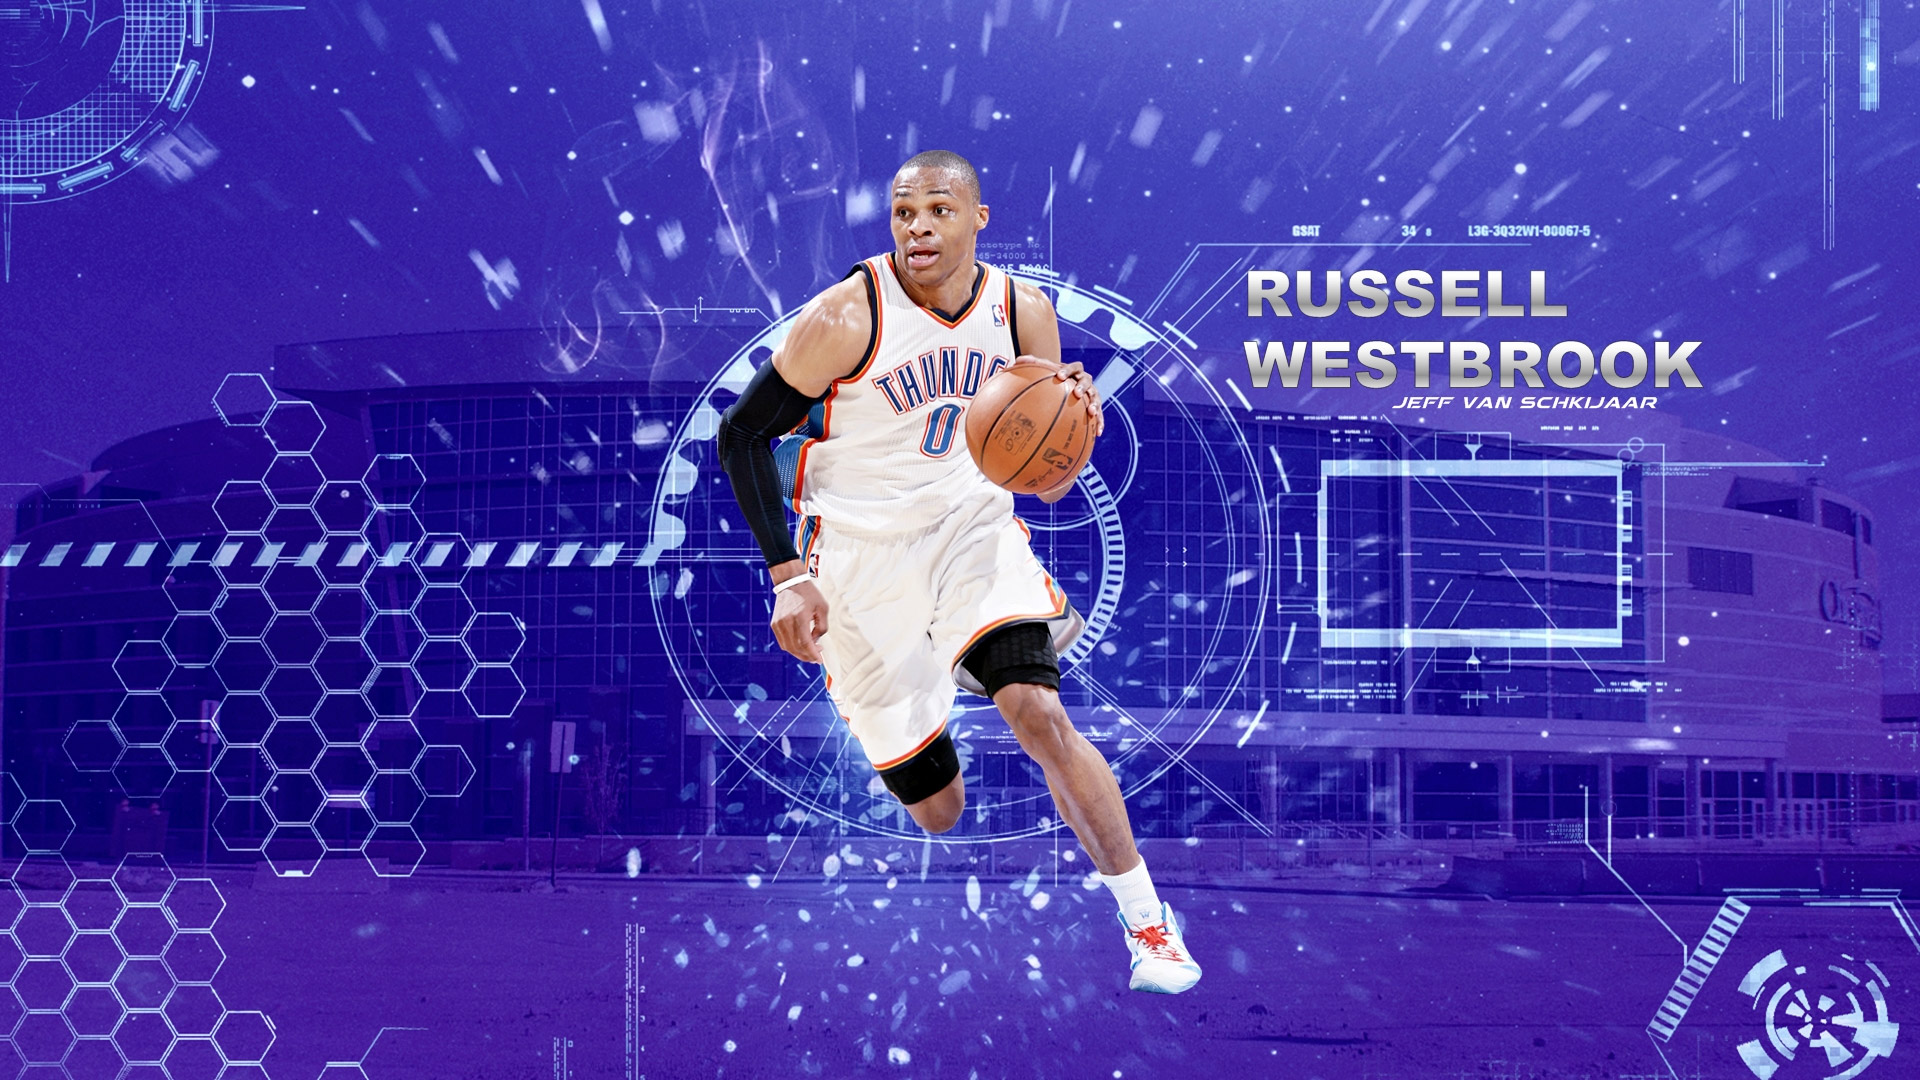 Russell Westbrook wallpaper  Westbrook wallpapers, Russell westbrook  wallpaper, Lakers wallpaper